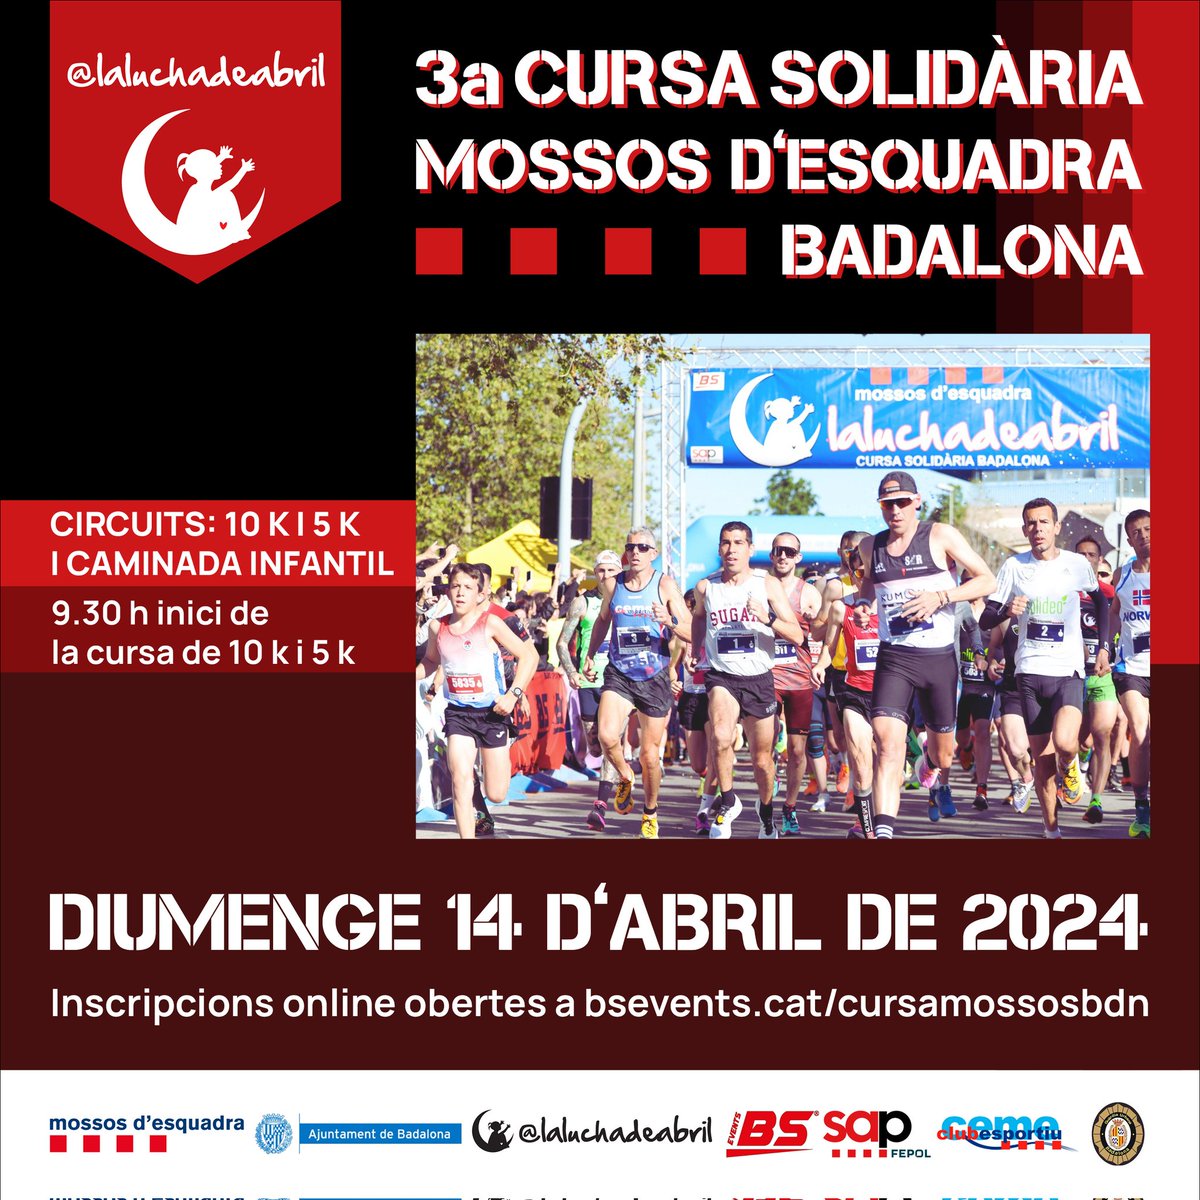 🟦🟦🟦🟦 Aquest diumenge 14 d’abril #Badalona acull la III Cursa  Popular @mossos per @LaLuchaDeAbril1, un esdeveniment benèfic que participa la @fepol_ per recaptar fons per a la investigació mèdica. Encara sou a temps de fer la vostra inscripció! 👉 bsevents.cat